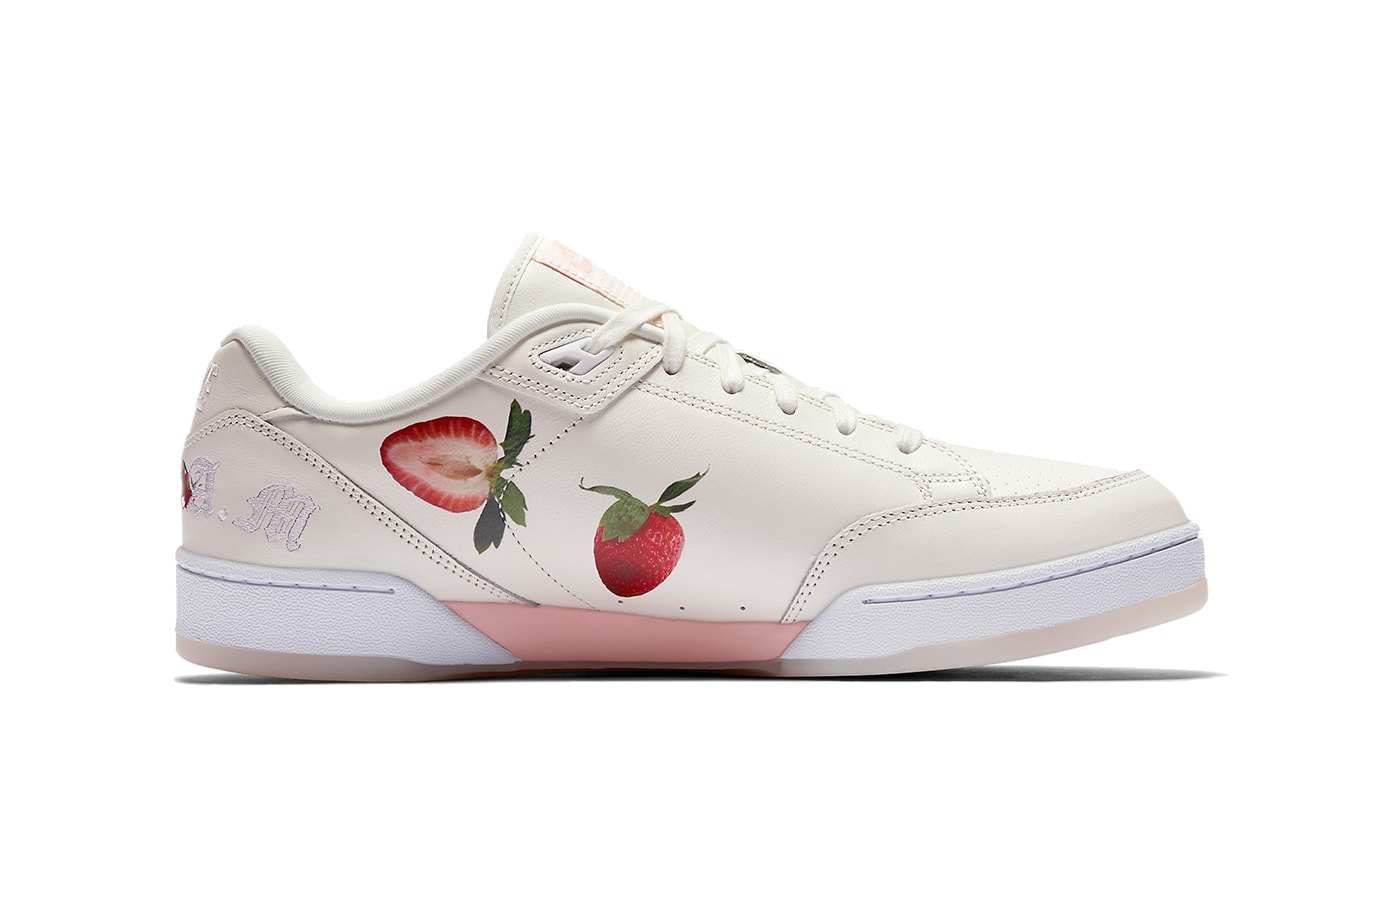 Nike Grandstand II Strawberries Cream Wimbledon 2018 Pinnacle